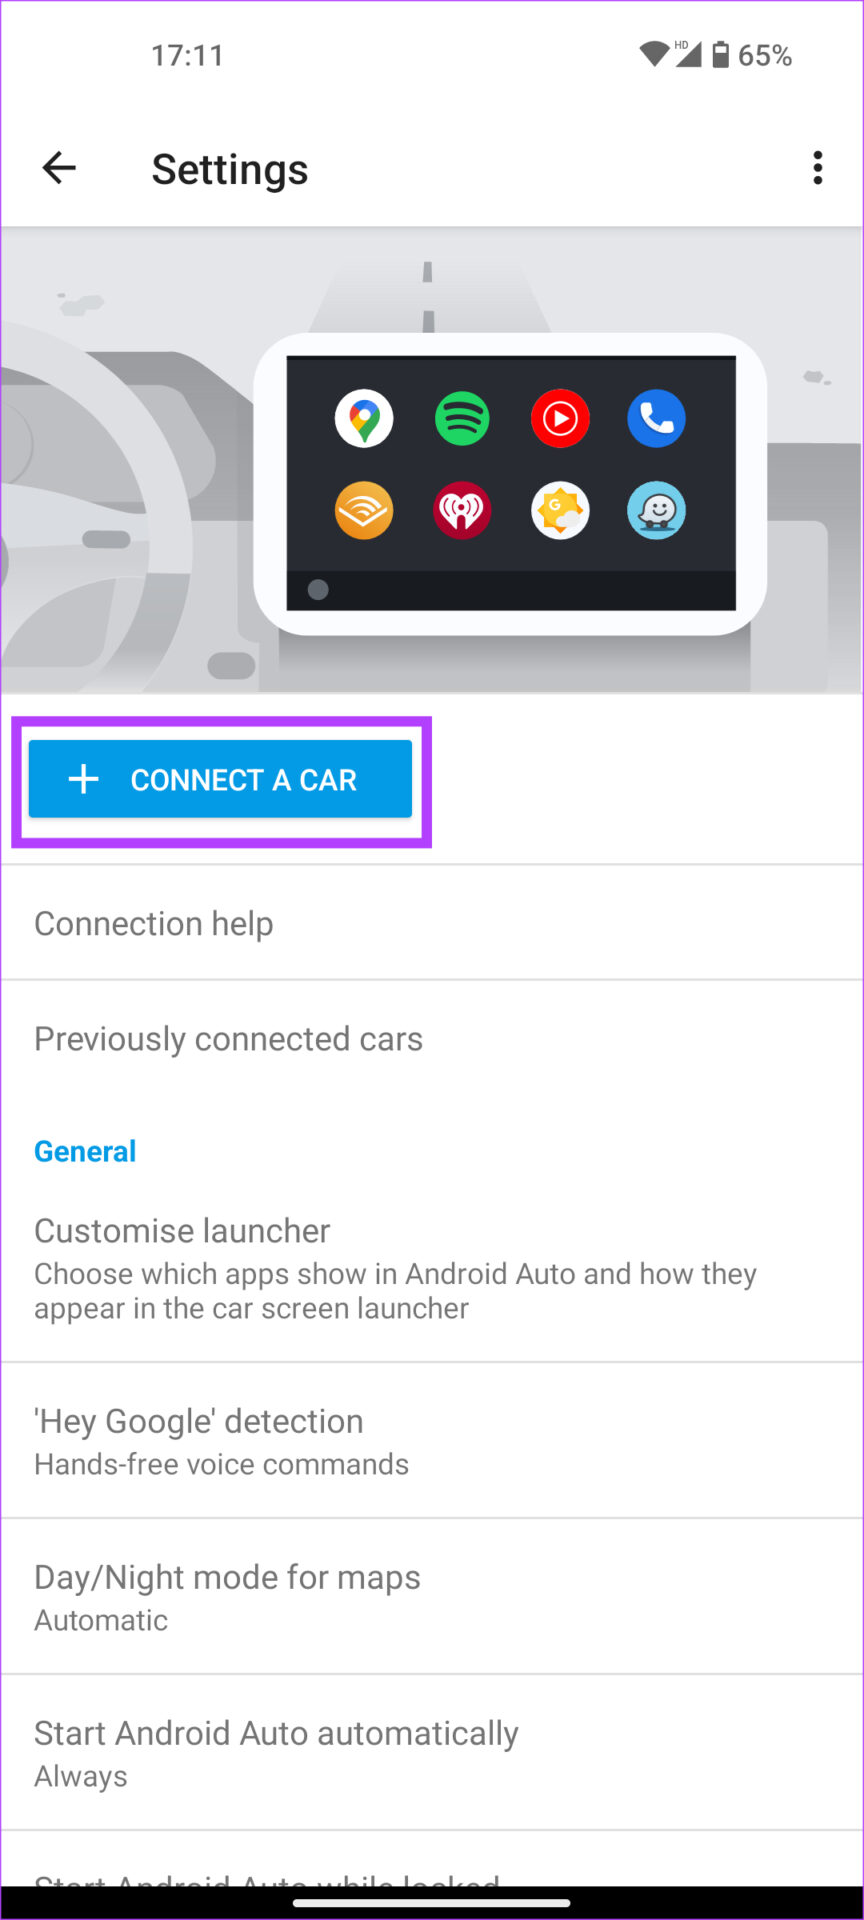 ماشین را متصل کنید و مشکل صفحه سیاه Android Auto را برطرف کنید